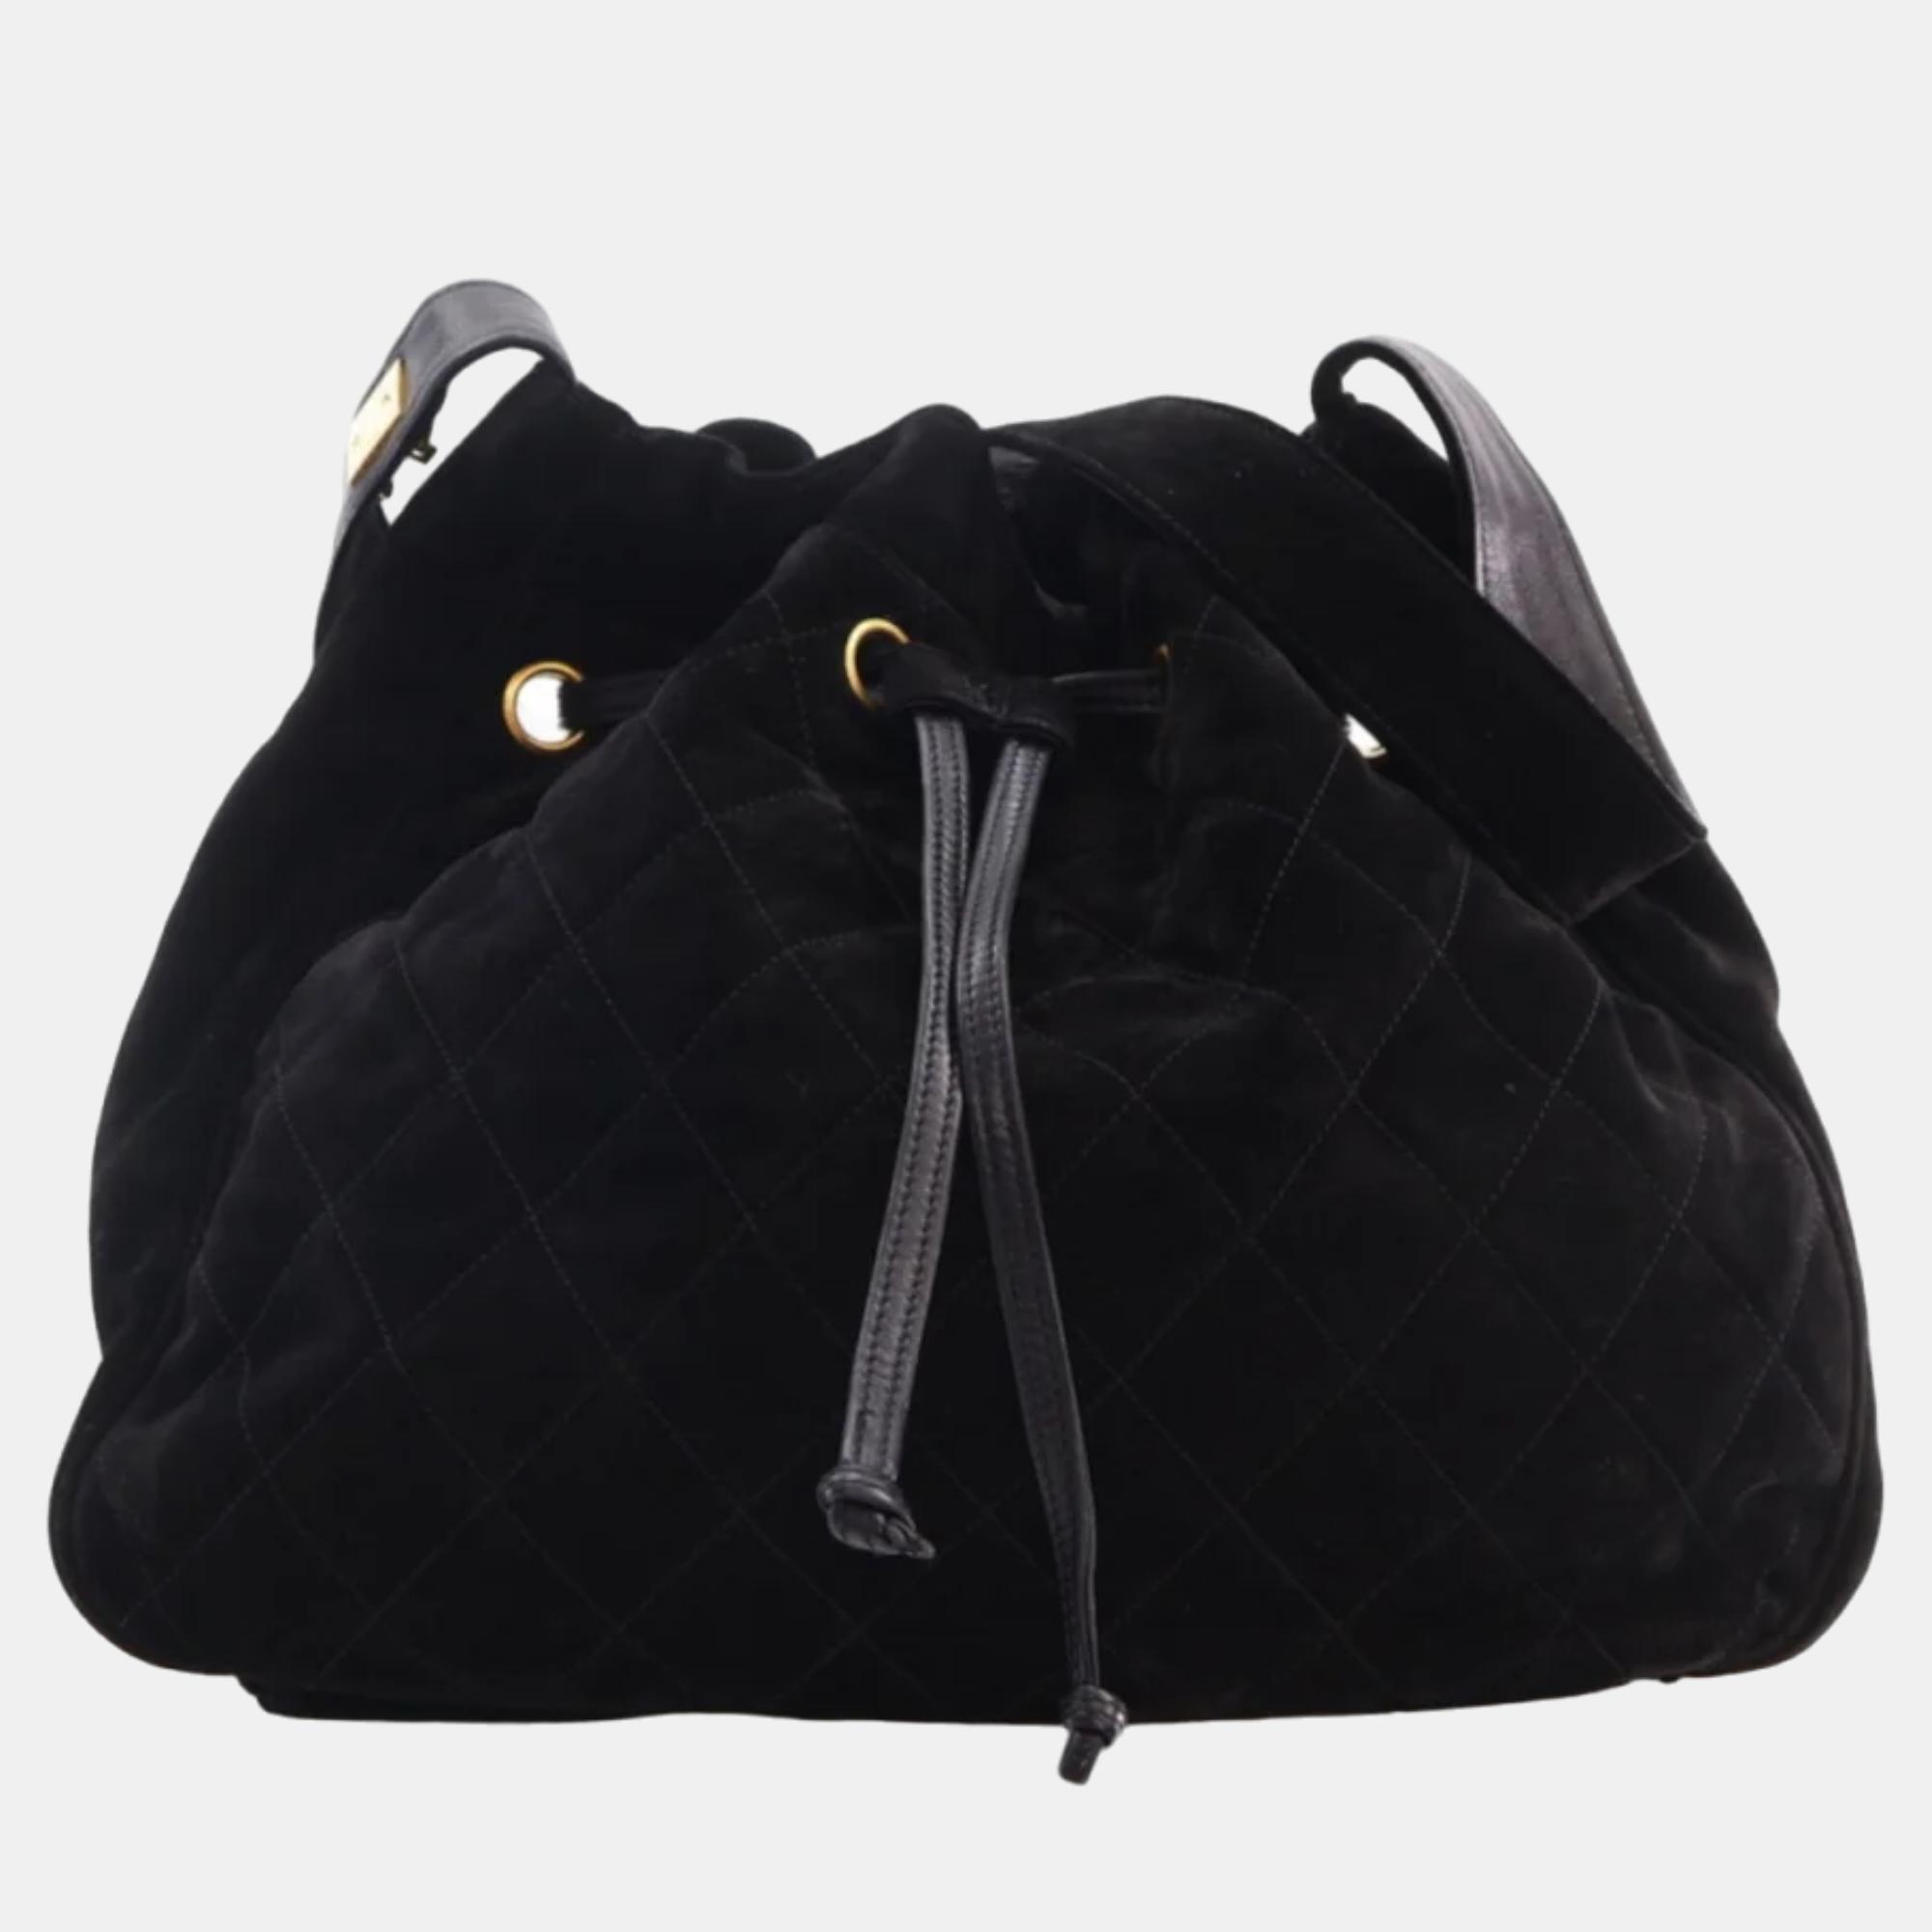 Chanel black suede cc vintage bucket bag